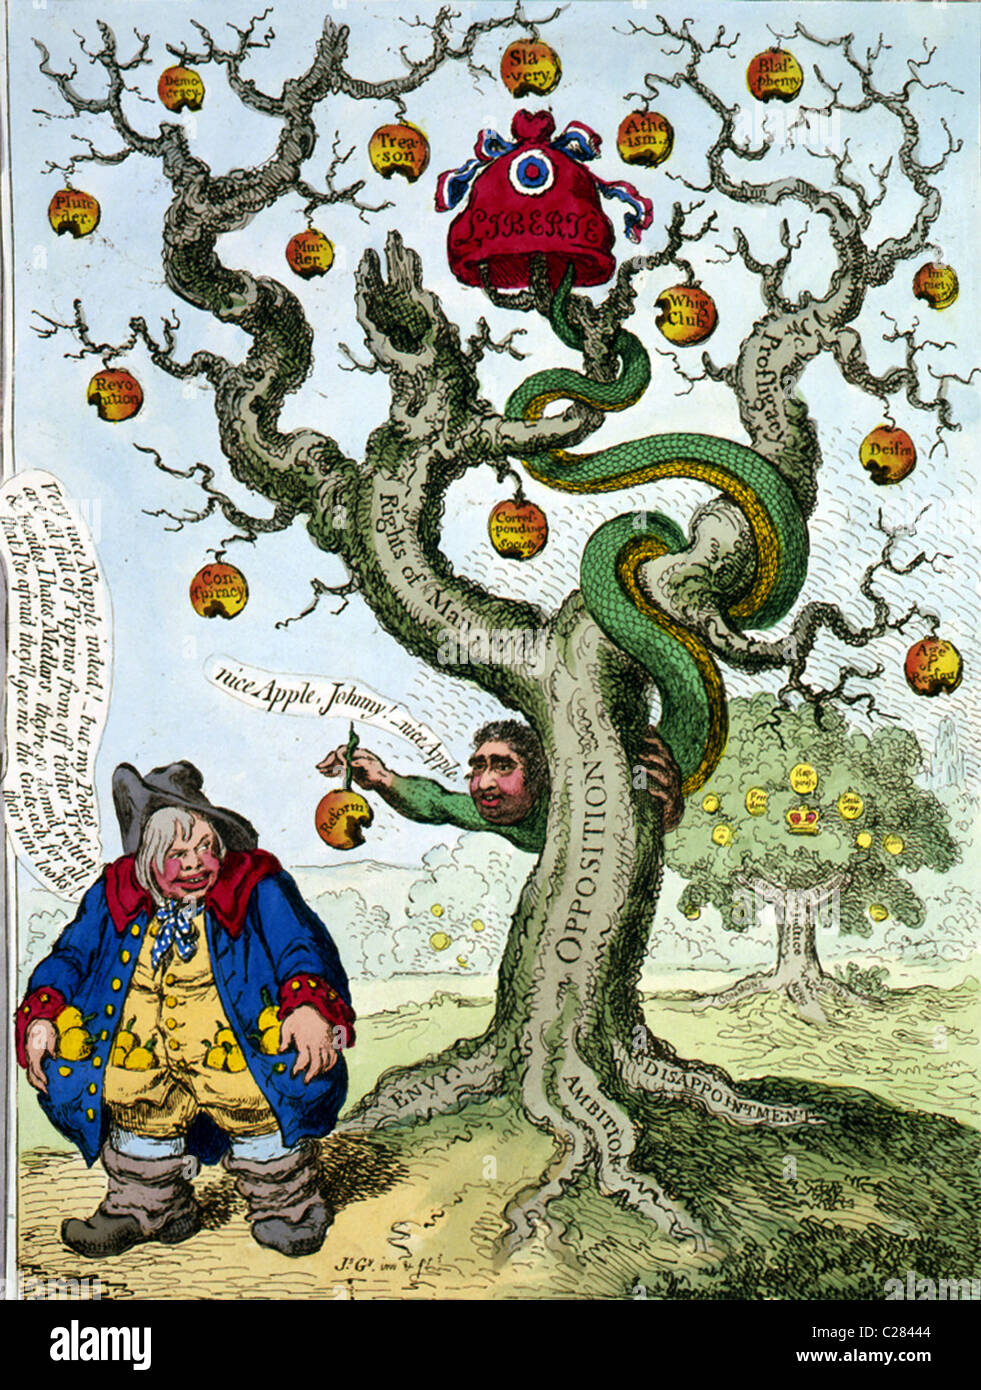 L'albero della libertà con il diavolo allettante Giovanni - Boll. Foto Stock